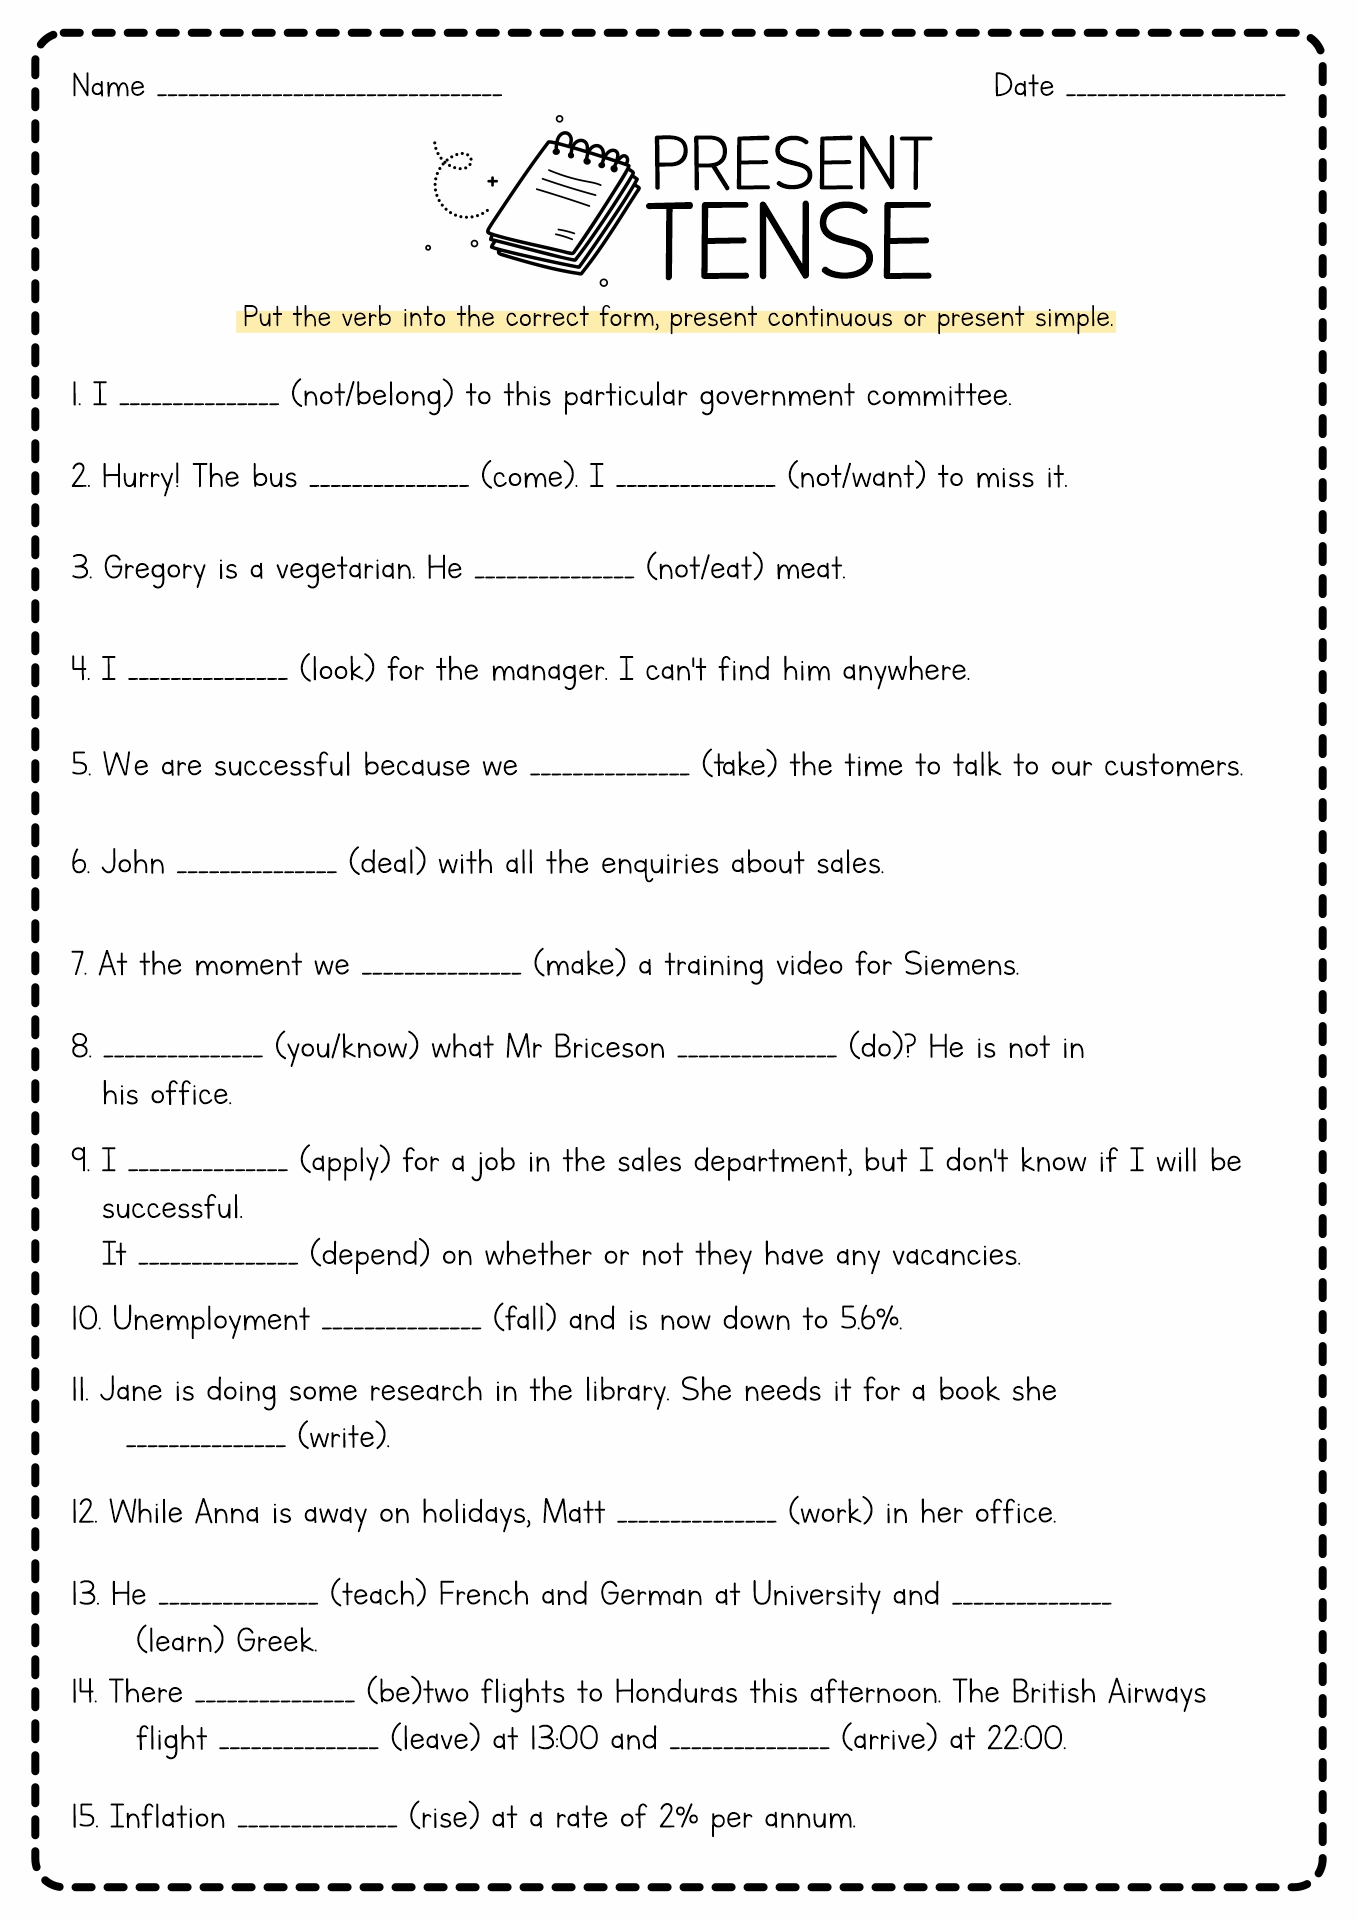 Present Tense Verb Worksheet Printable